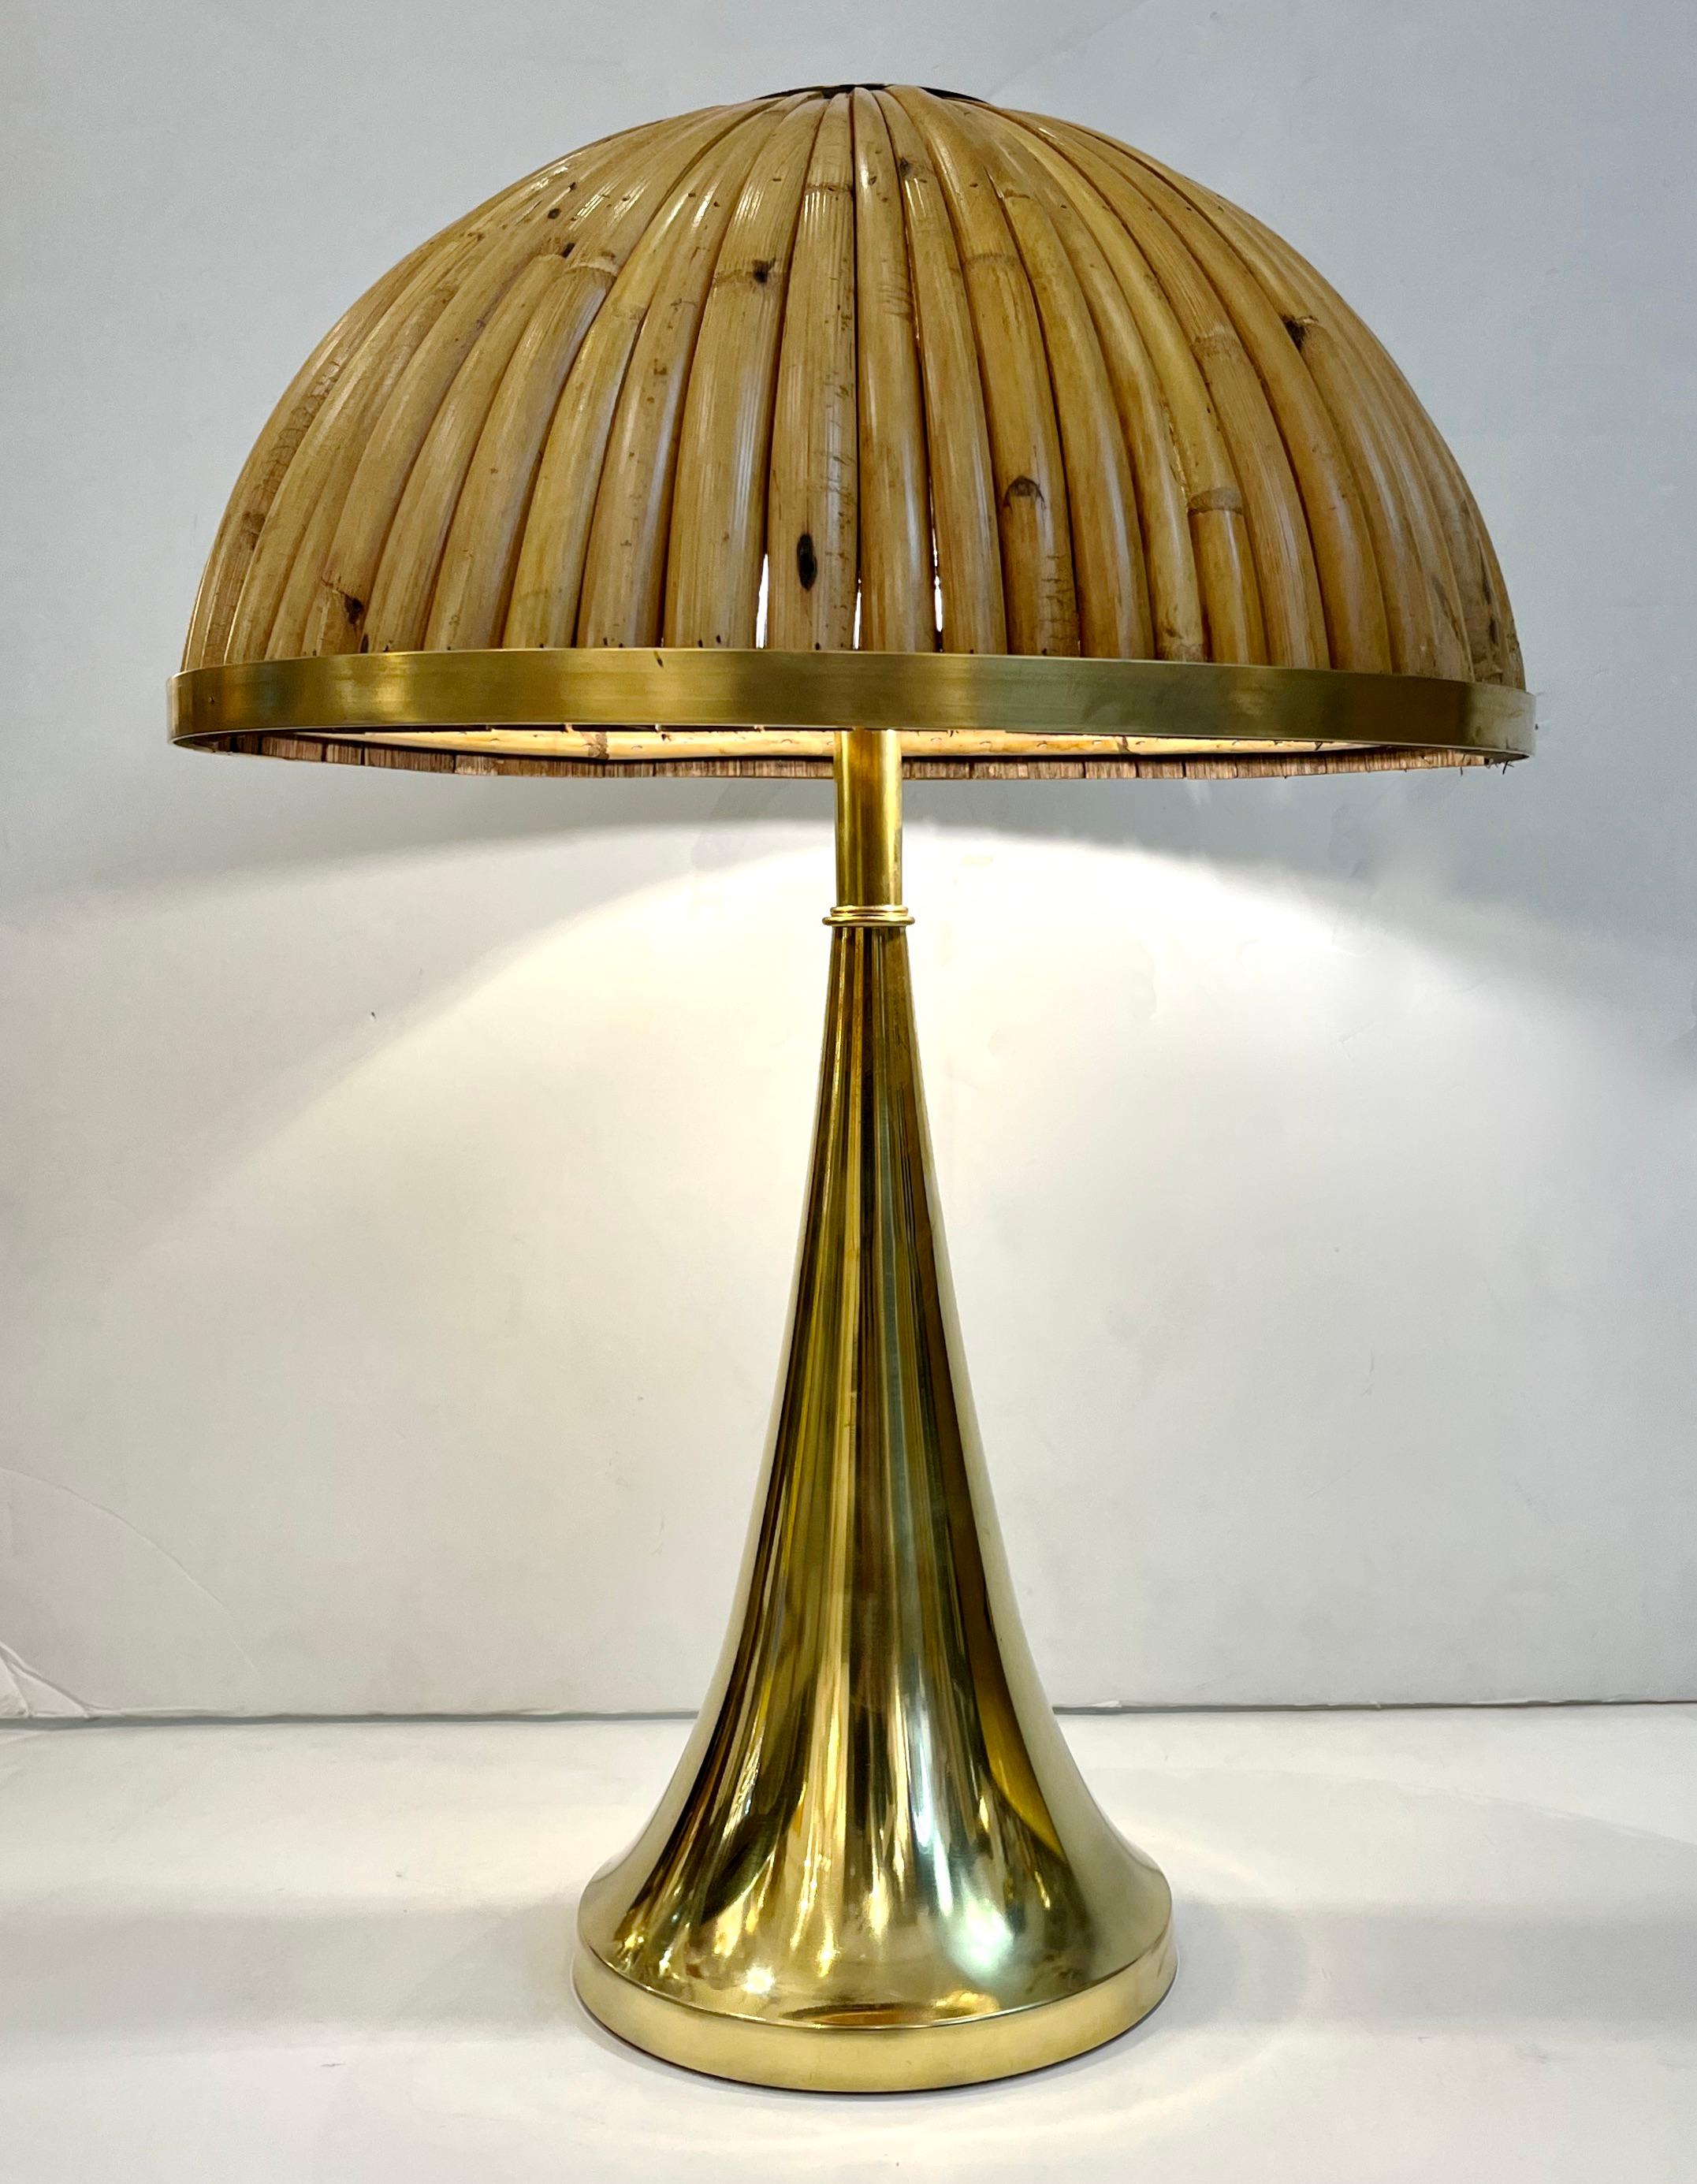 Une création contemporaine organique, entièrement fabriquée à la main en Italie, une paire de lampes de table organiques épurées, le corps sensuel et lumineux en laiton doré soutenant un élégant abat-jour en demi-lune entièrement fait à la main en